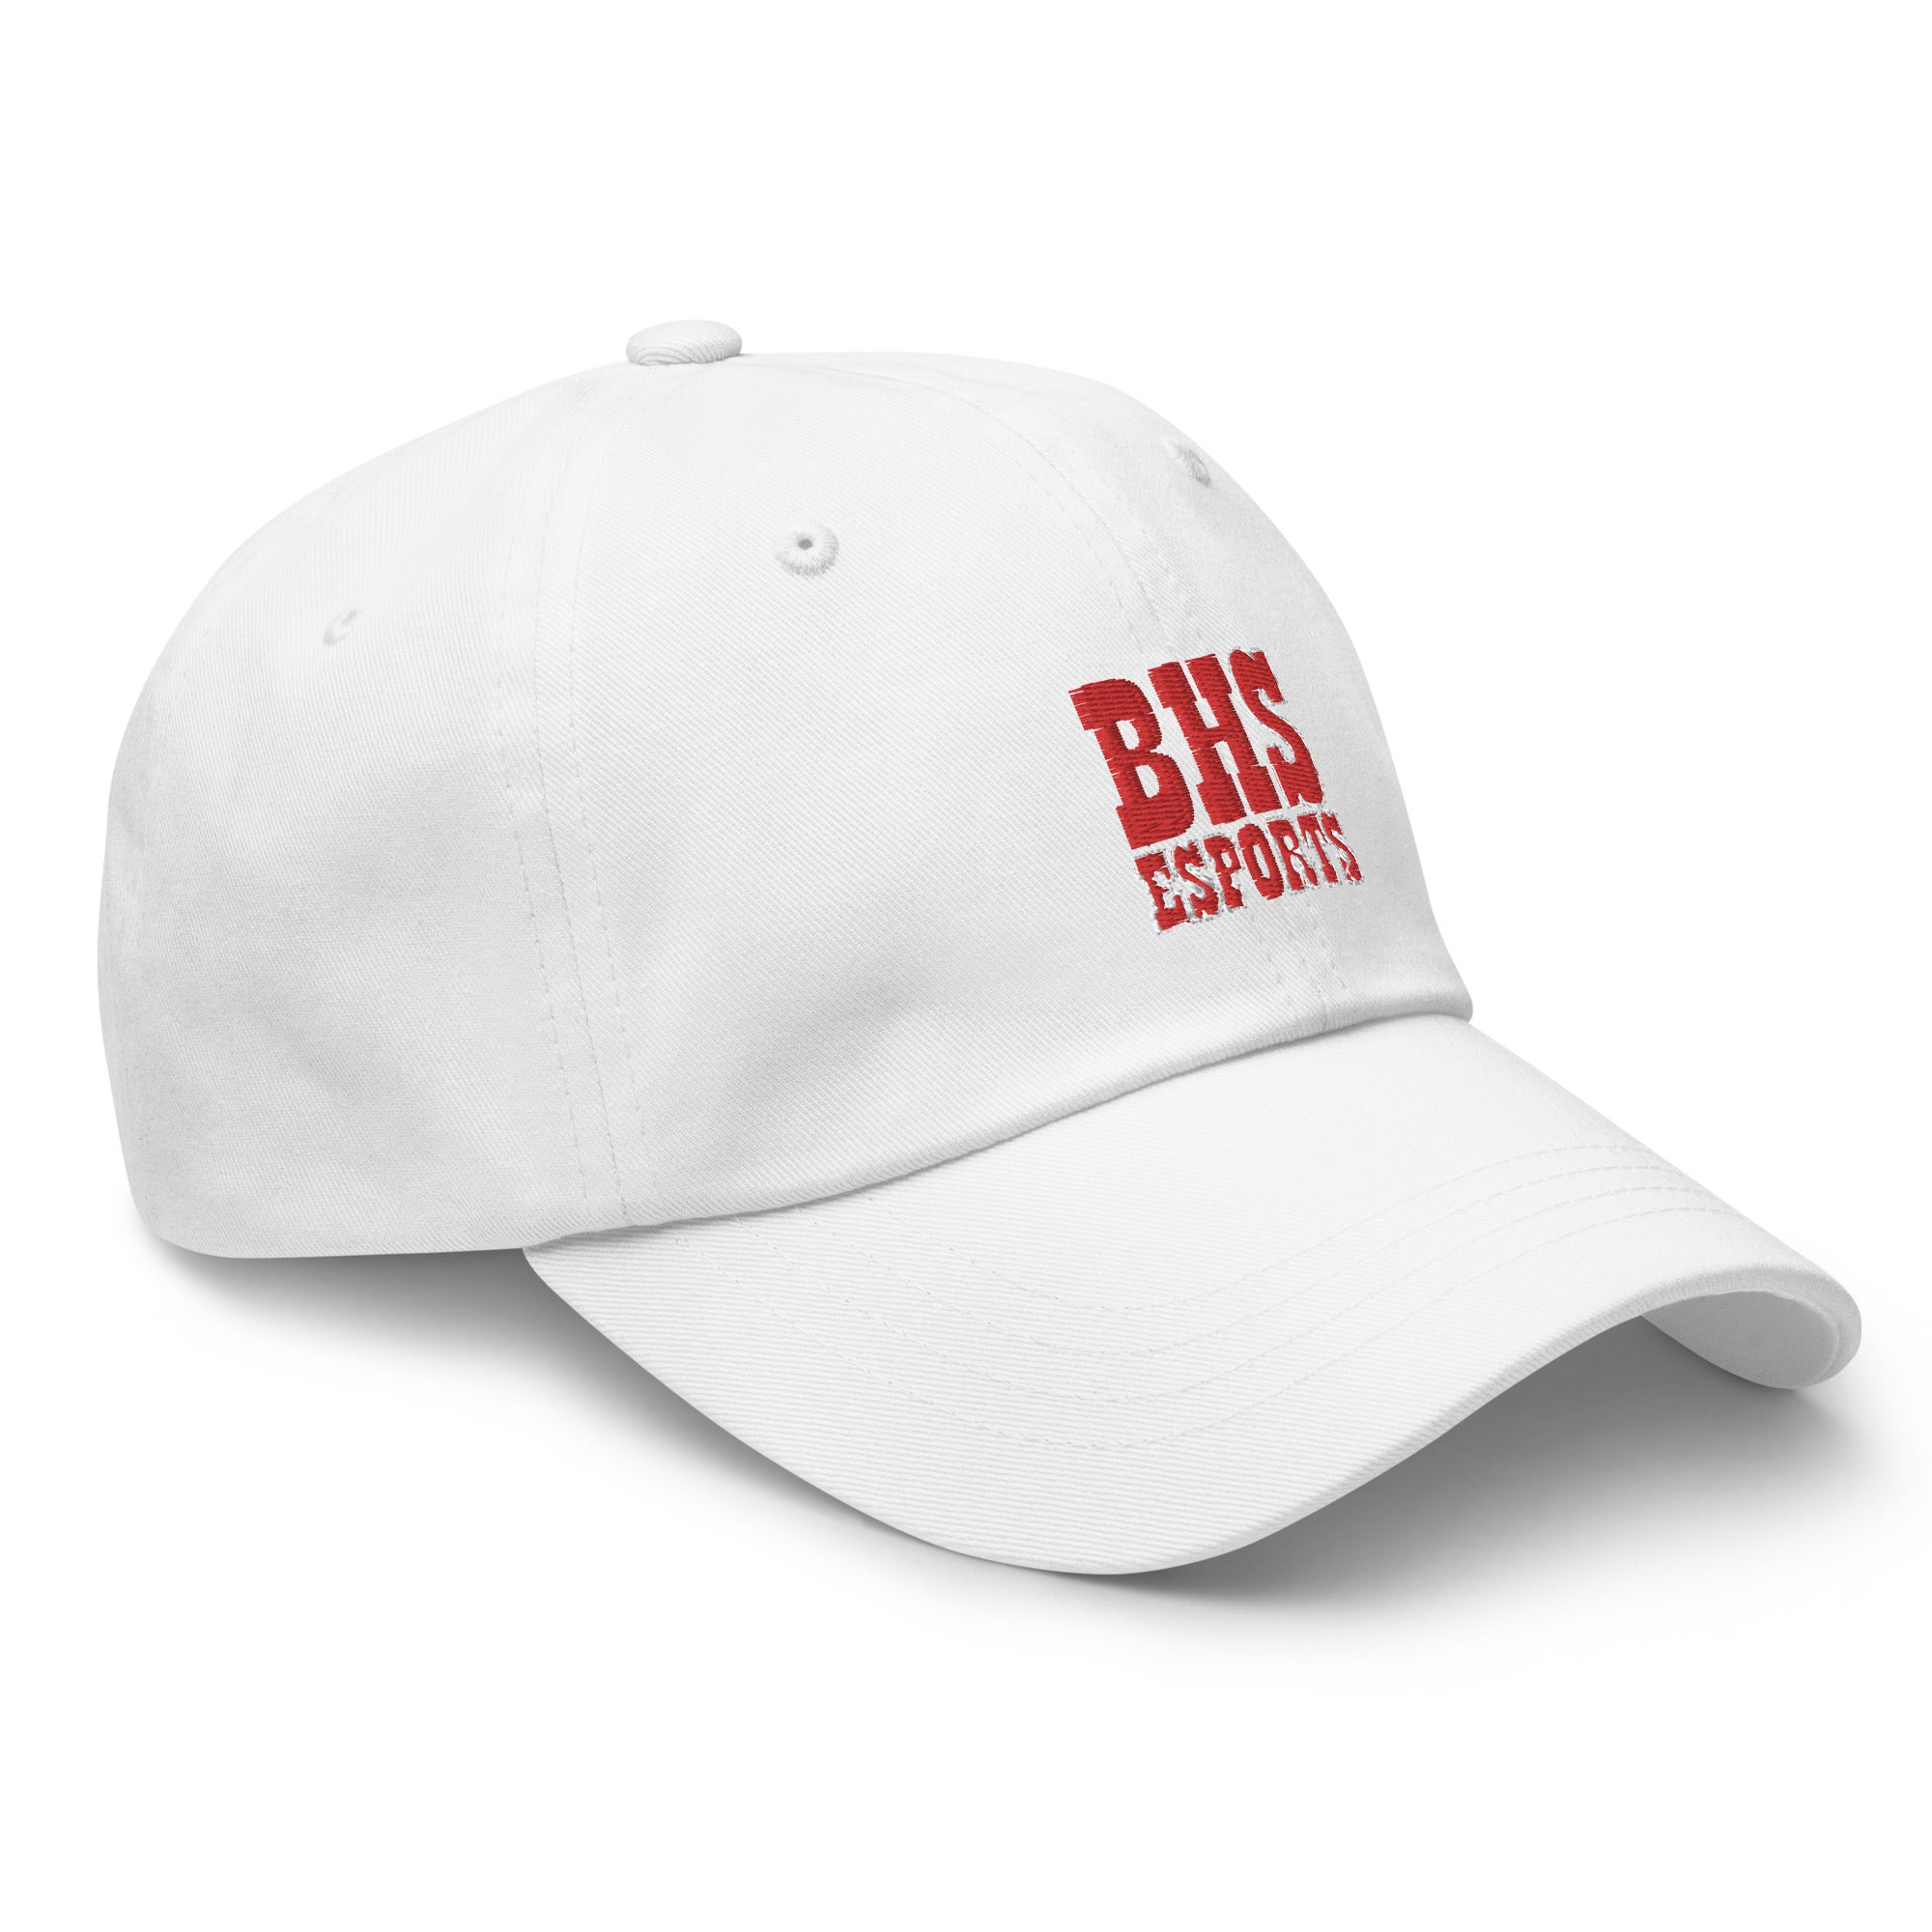 Bellevue High School | On Demand | Embroidered Dad Hat